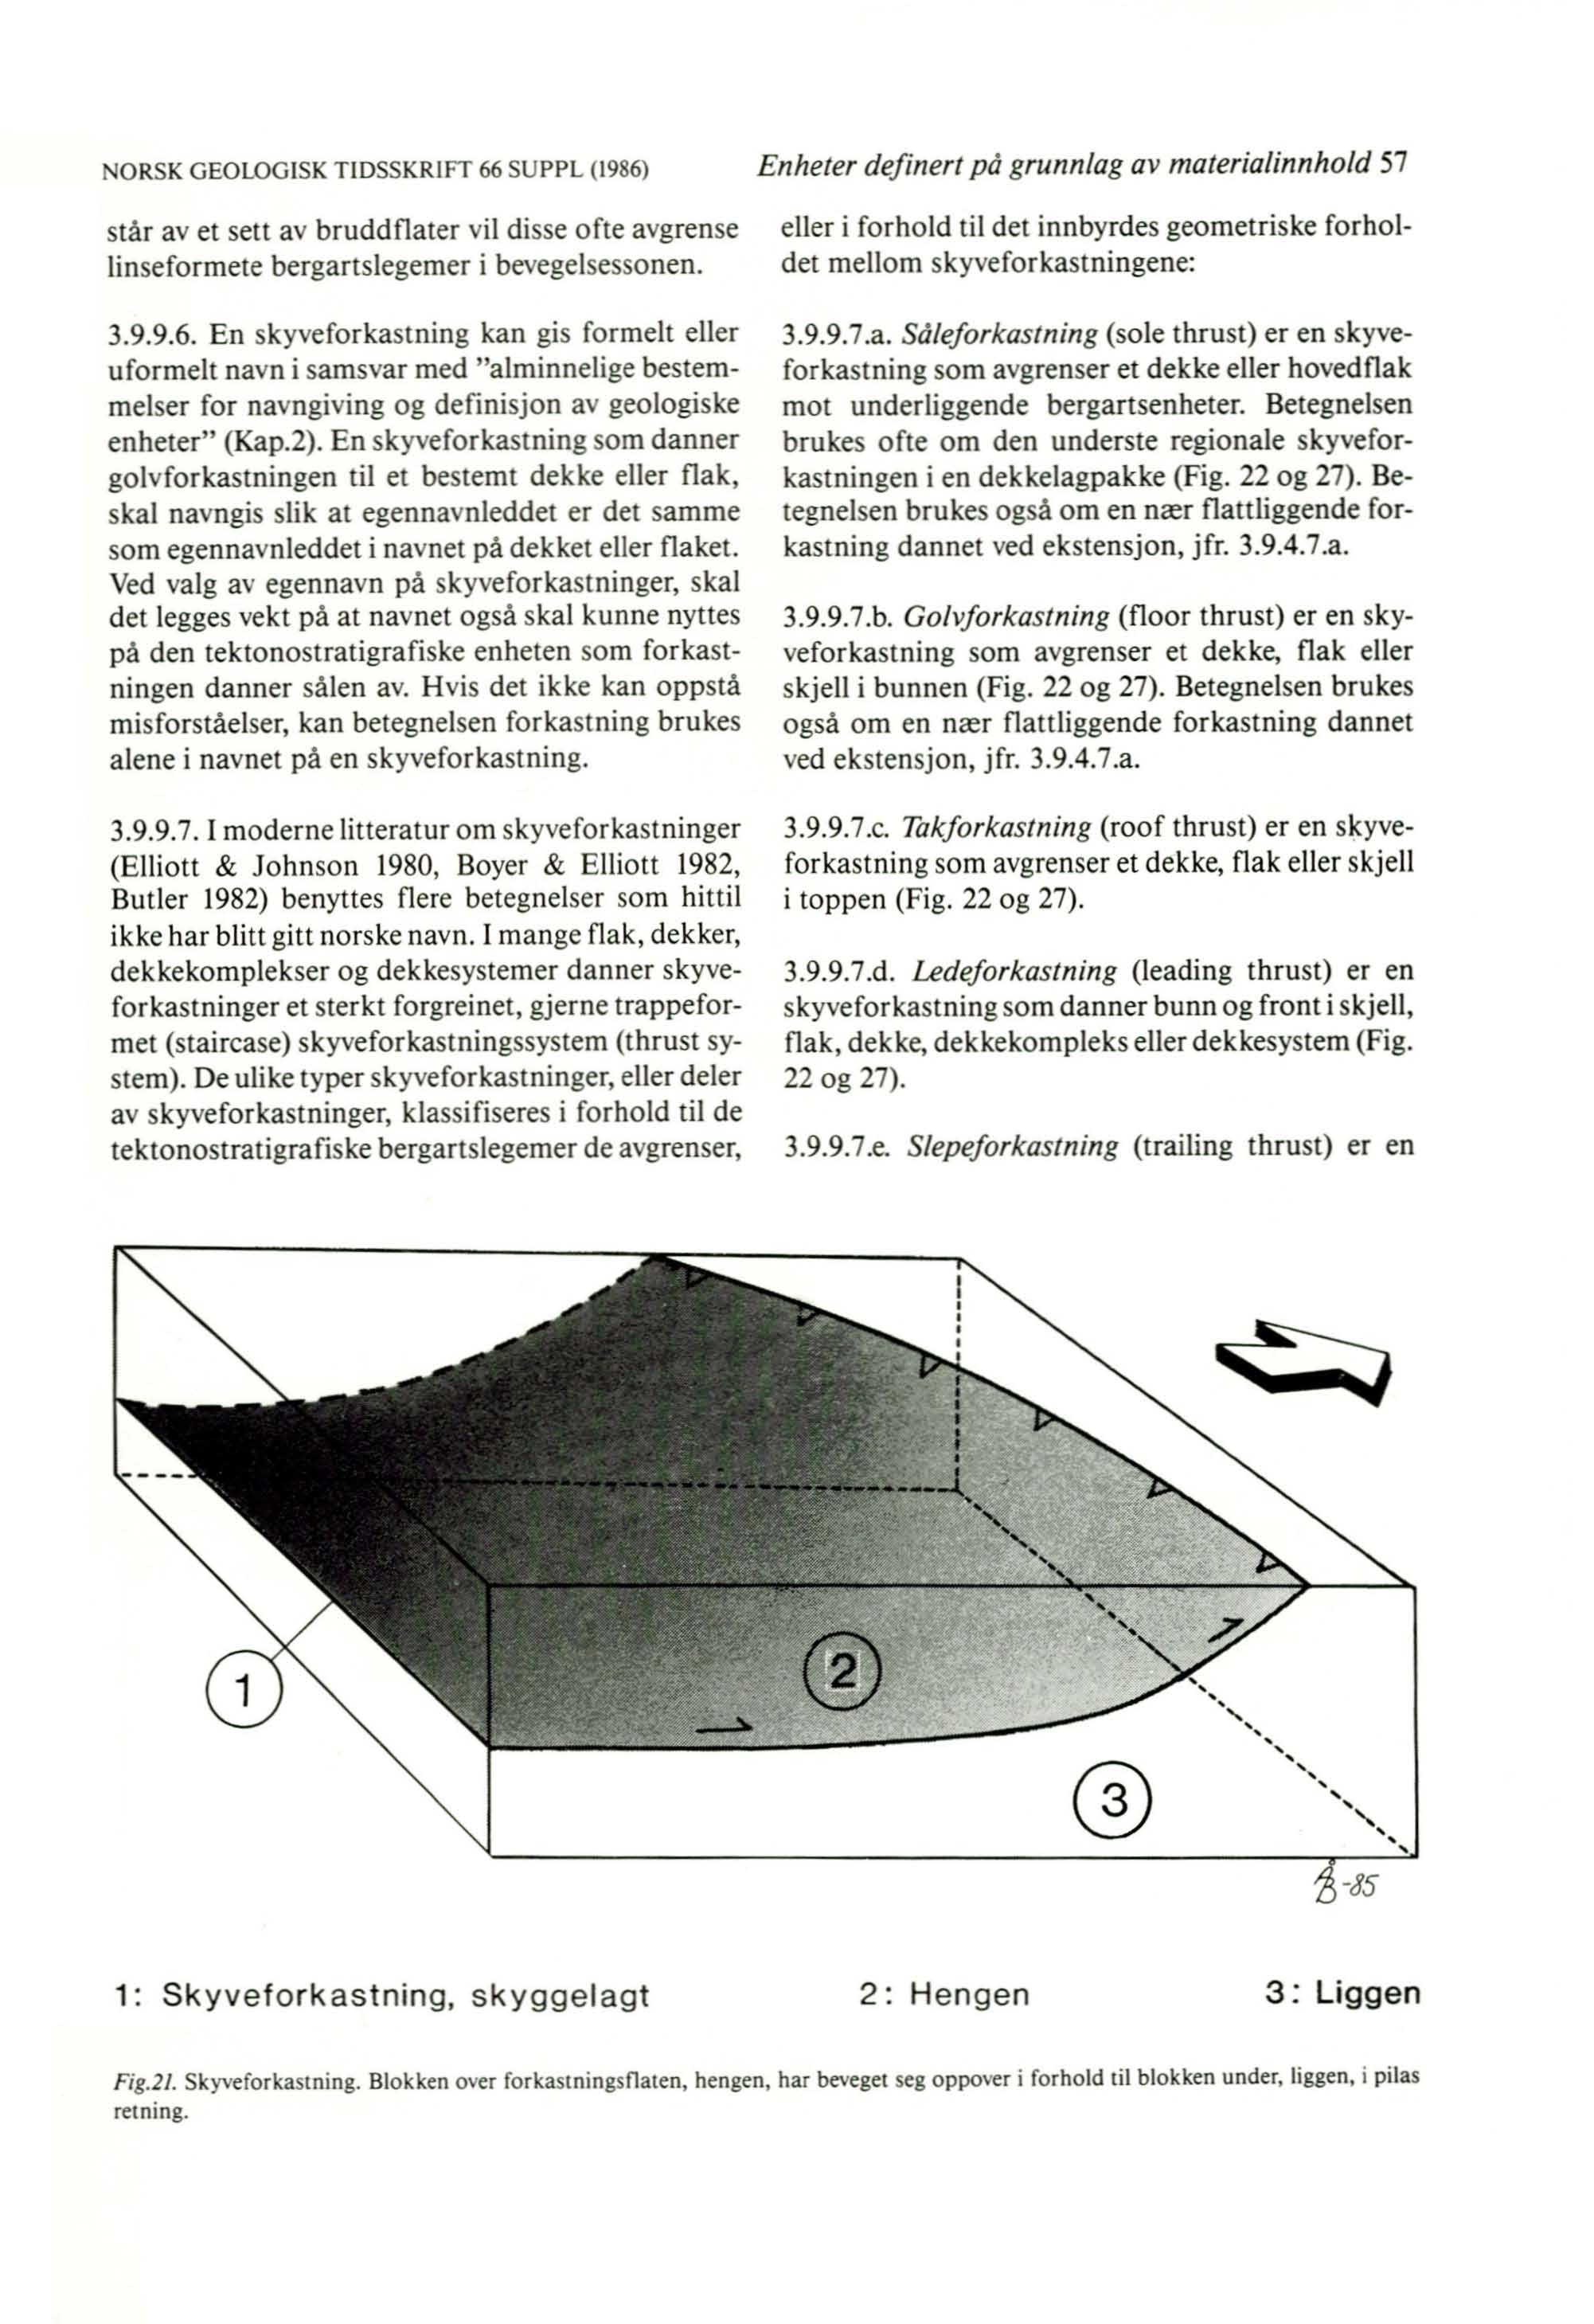 ORSK GEOLOGISK TlDSSKR IFr 66 SUPPL (1986) stå r av et sett av bruddflater vil disse ofte avgrense linsefor mete bergartslegemer i bevegelsessonen. 3.9.9.6. En skyvefor kastnin g kan gis formelt eller uformel t navn i samsvar med "alminnelige bestemmelser for navngiving og defini sjon av geologiske enheter" (Kap.